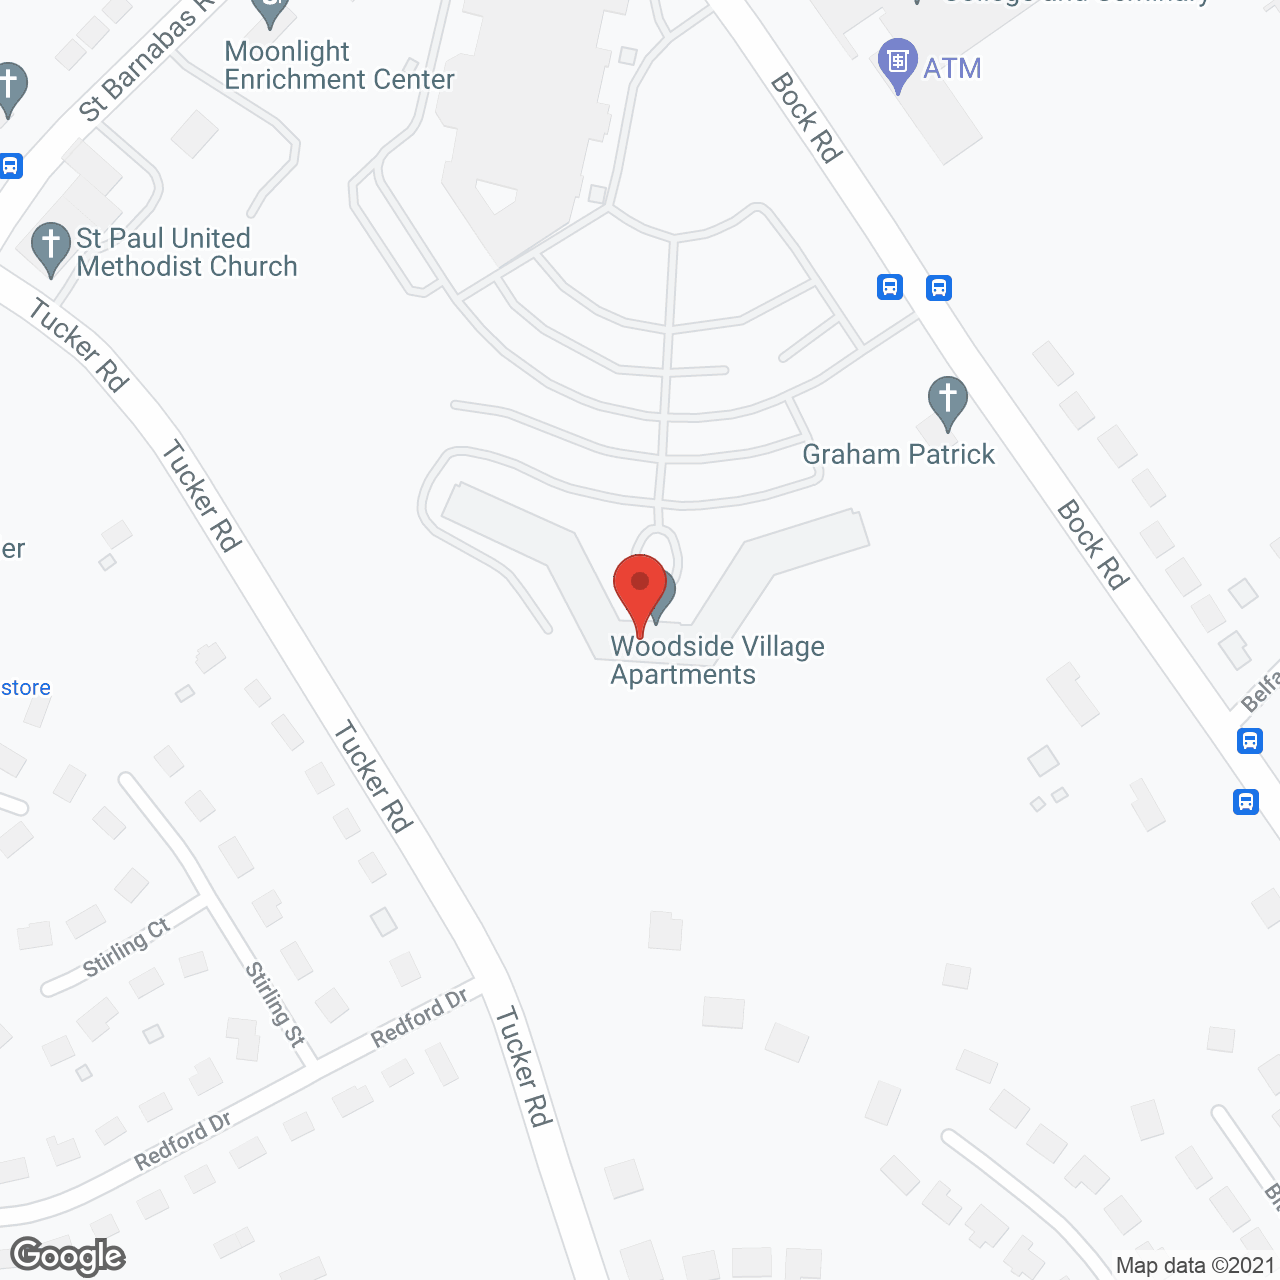 Woodside Village in google map